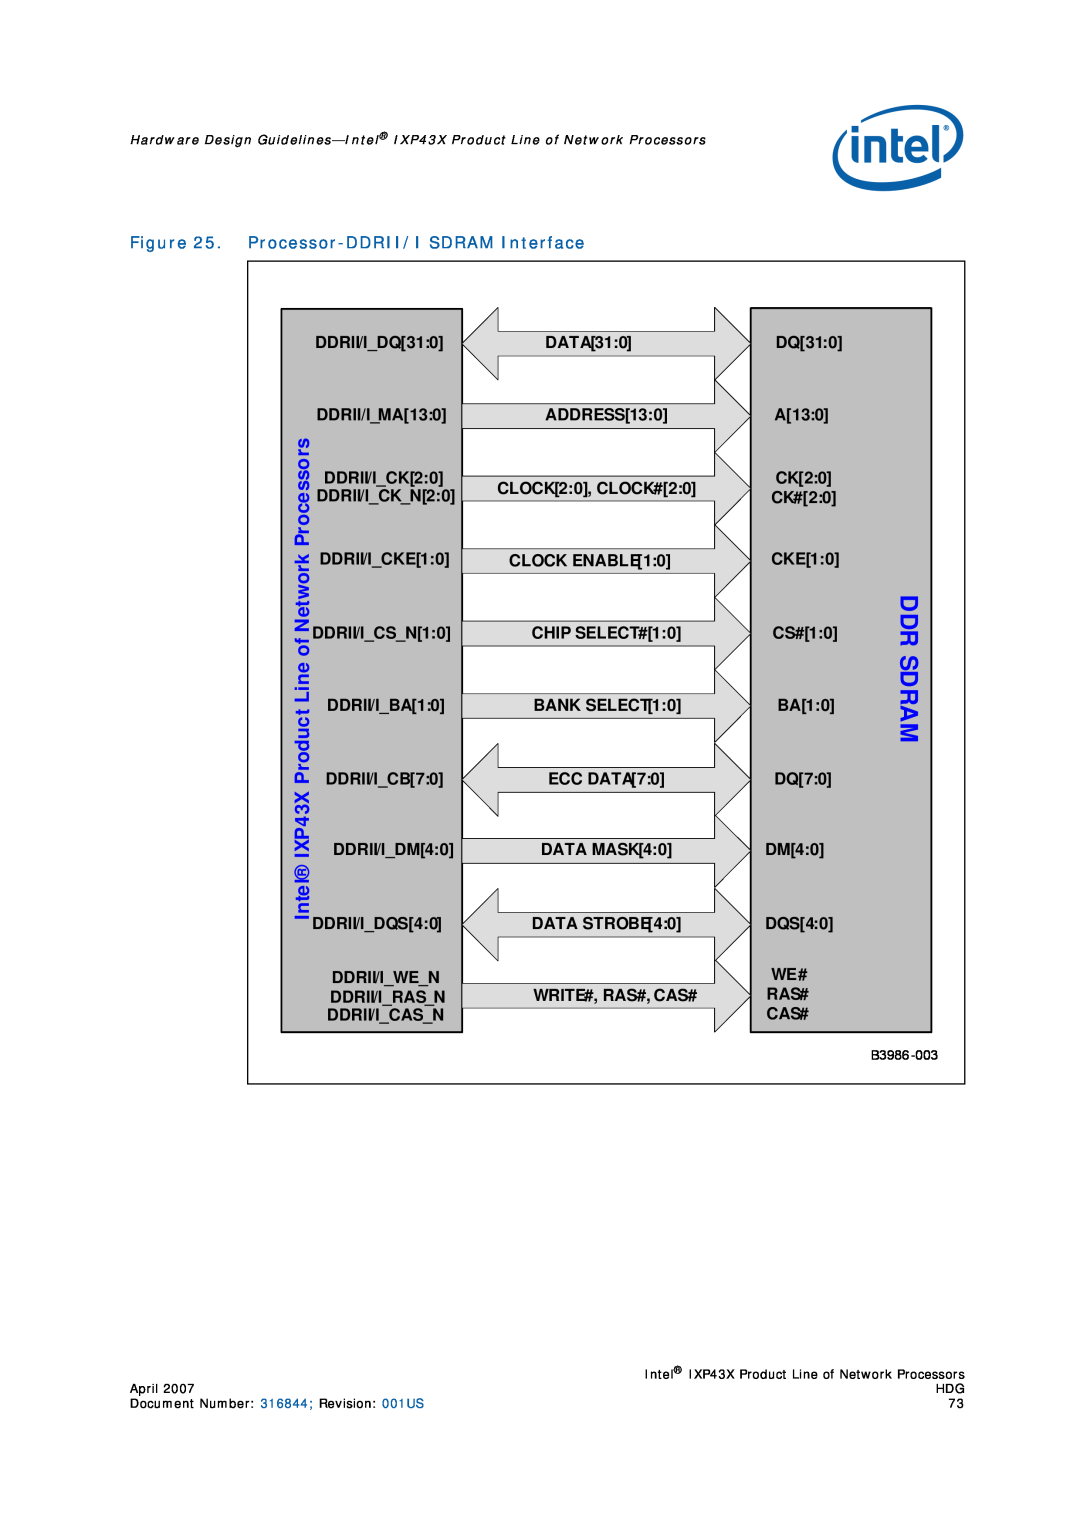 Intel IXP43X manual Ddr Sdram, Processors, Product Line of Network, Intel, Processor-DDRII/I SDRAM Interface 